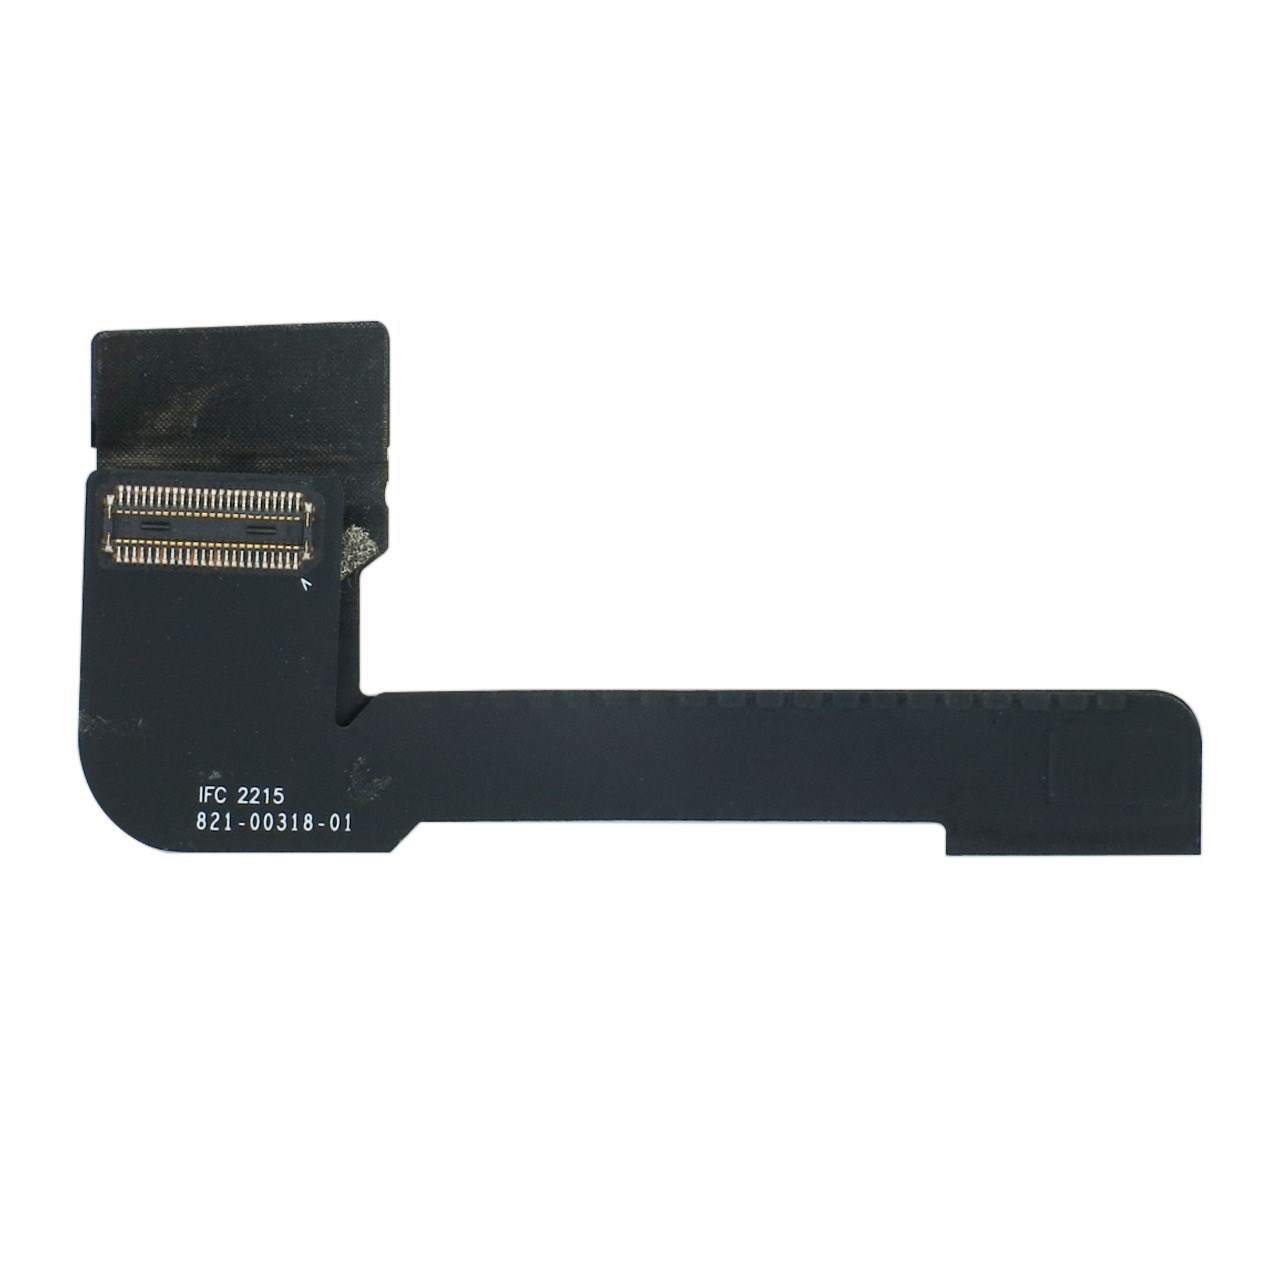 فلت کابل ال سی دی اپل مدل A1534 مناسب برای مک بوک رتینا 12.5 اینچی